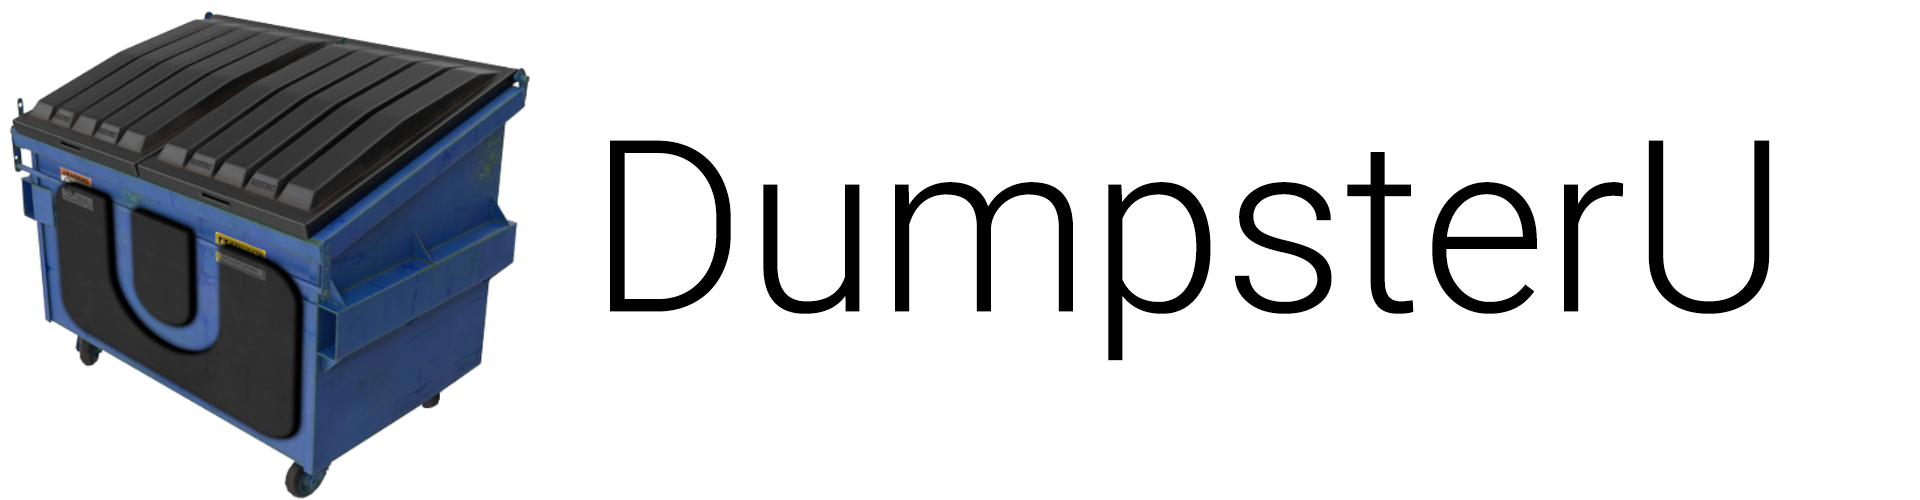 Wii Uコンテンツをpcヘ高速ダンプ Dumpsteru By Garyodernichts 大人のためのゲーム講座